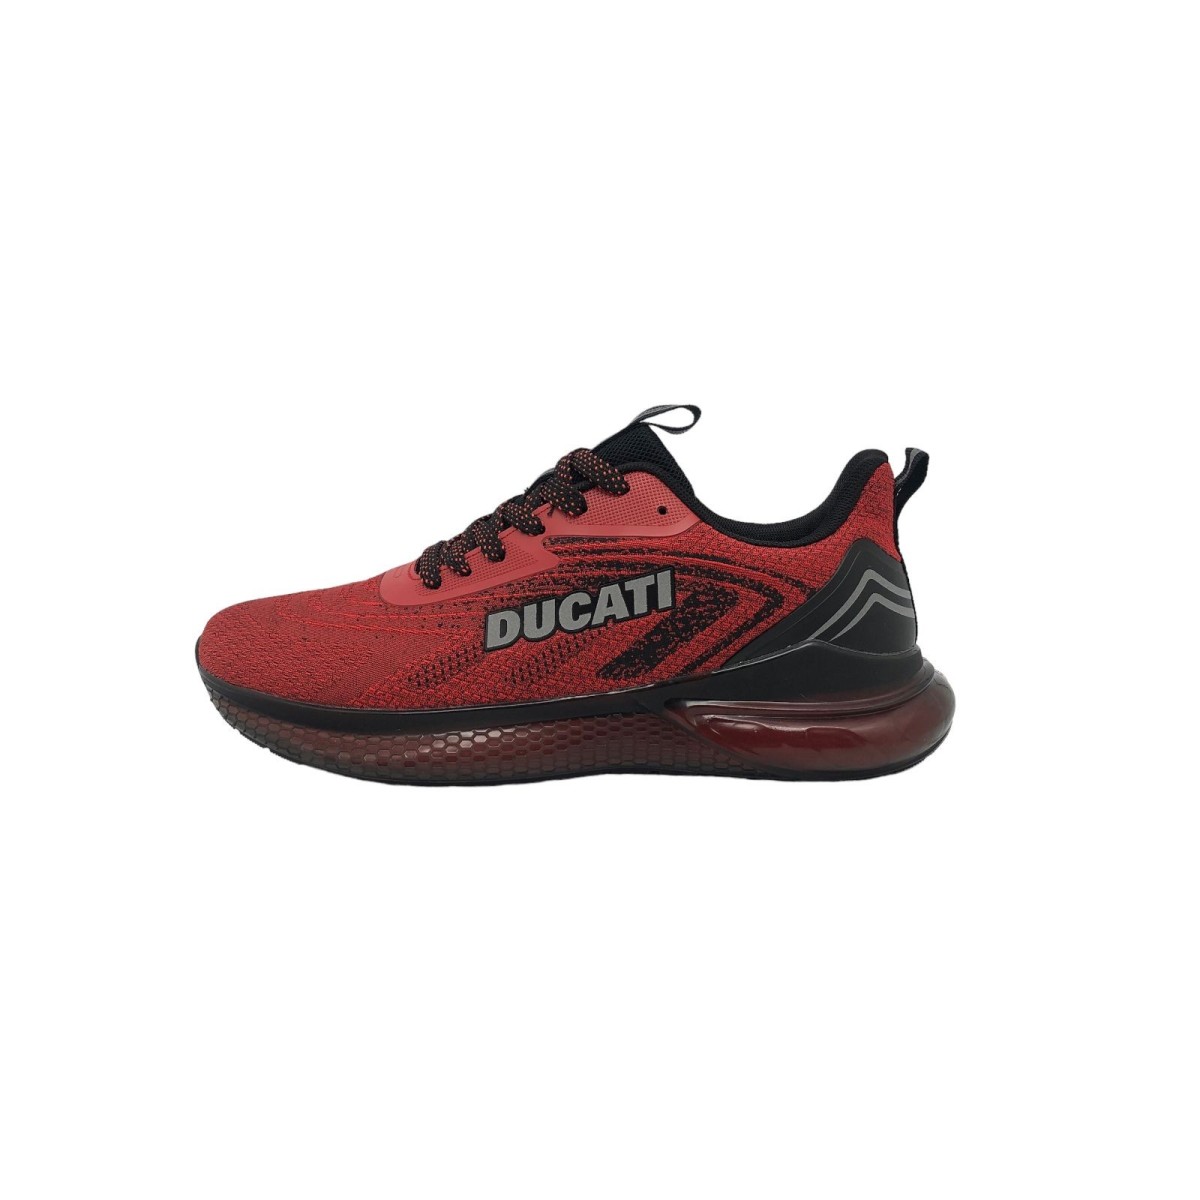 https://3pstock.com/56231-square_large_default/Chaussures-de-sport-homme-Road-Runner-Ducati-DU23M106-GB01-rouge-noir.jpg